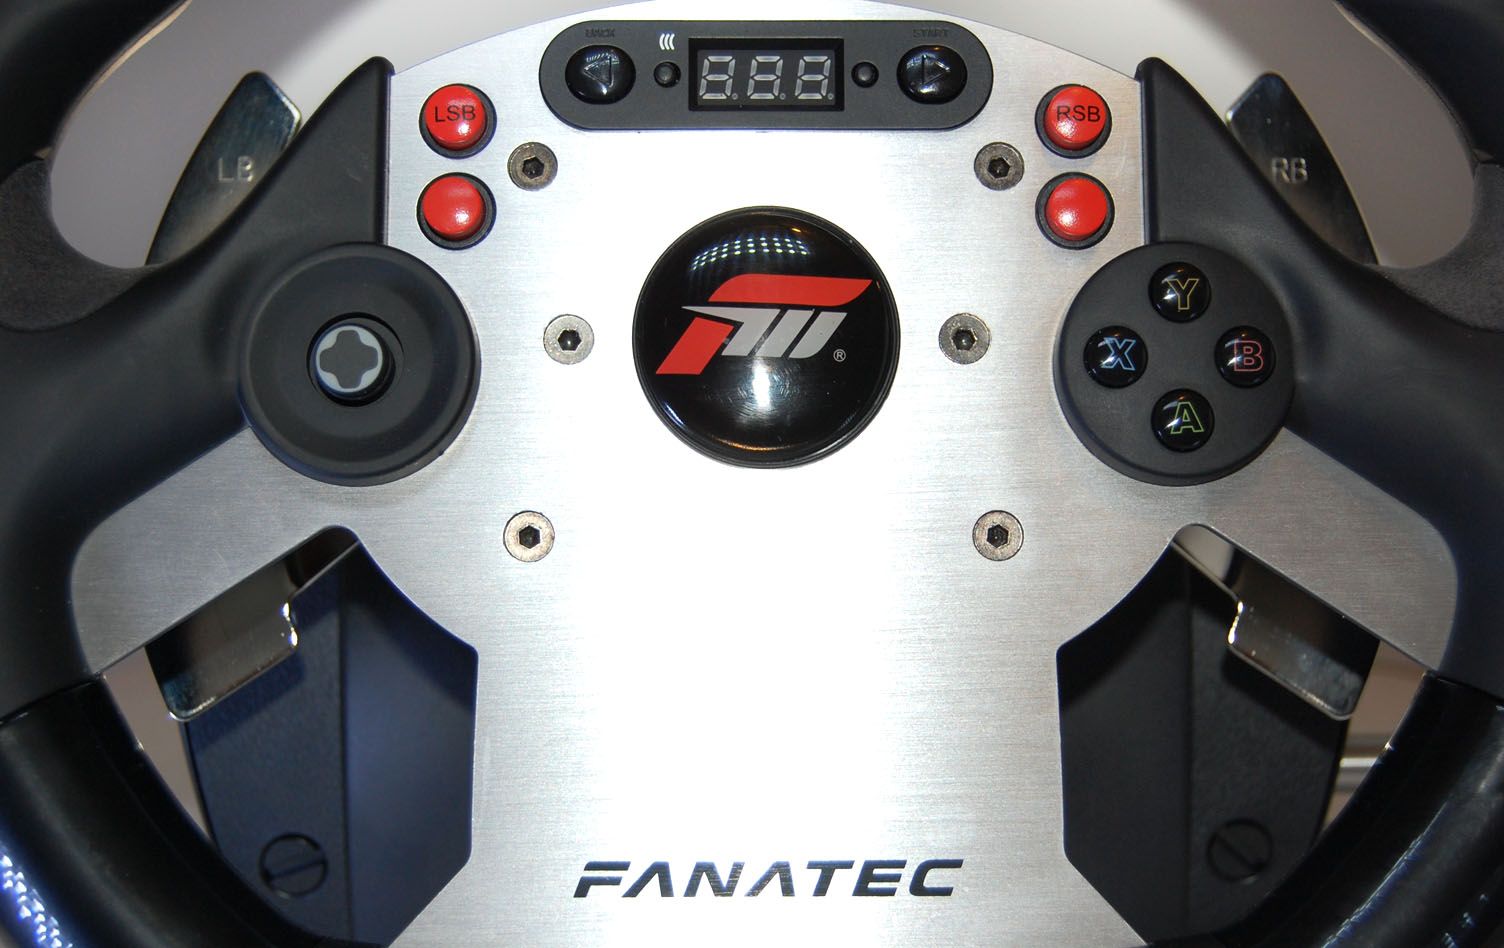 Giet Vervolgen de studie Review: Fanatec CSR Wheel, CSR Elite Pedals and CSR Shifter Set